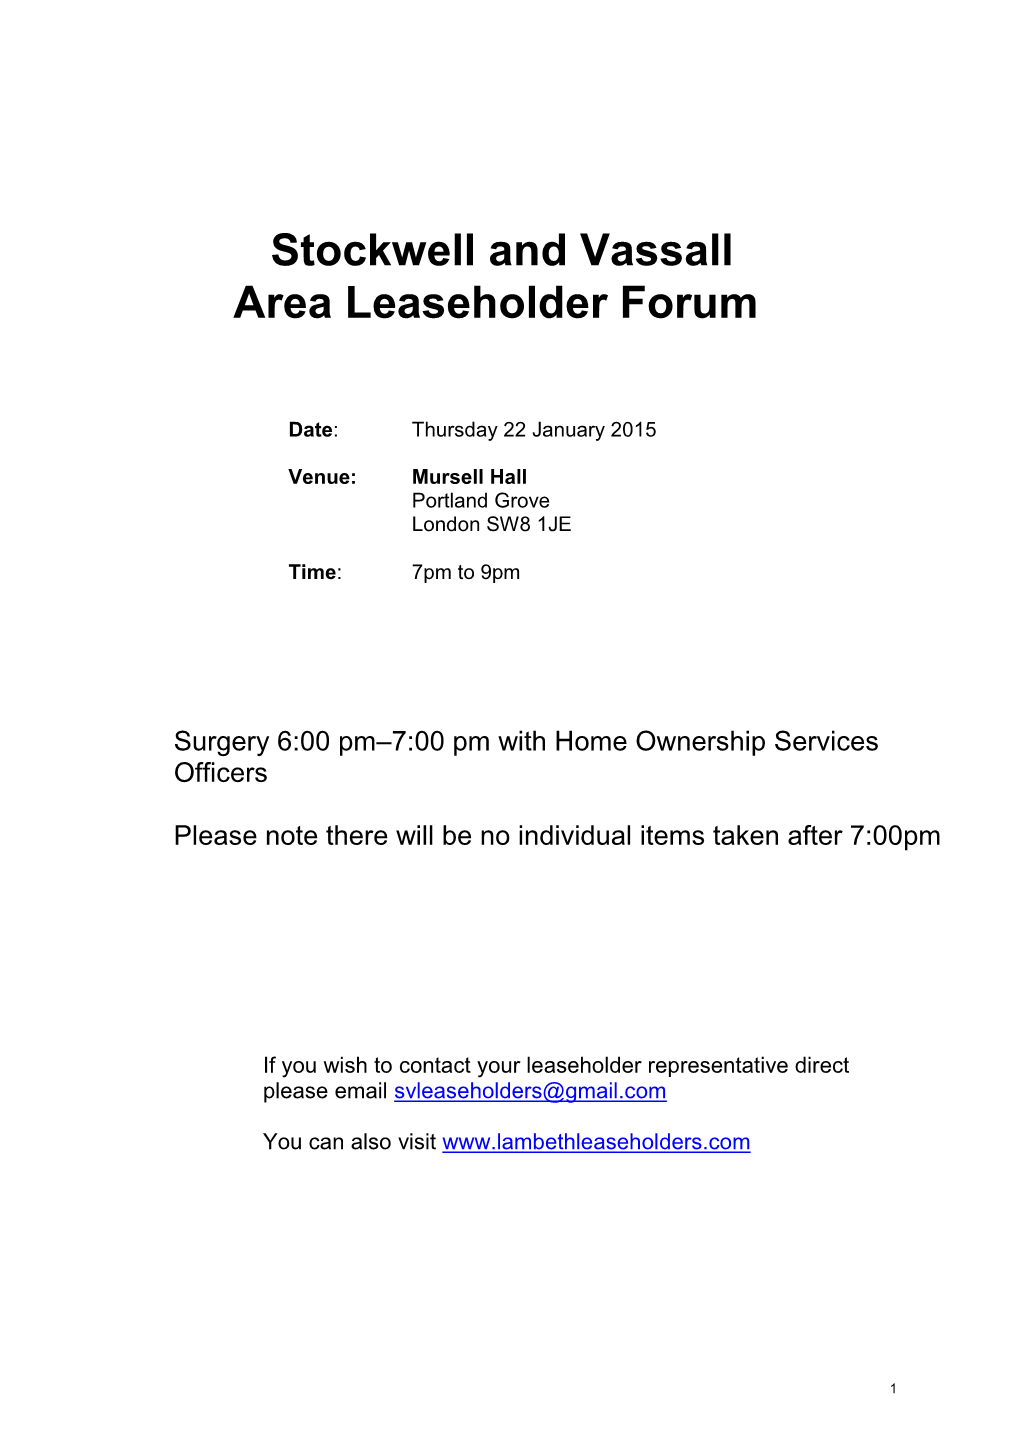 Stockwell and Vassall Area Leaseholder Forum